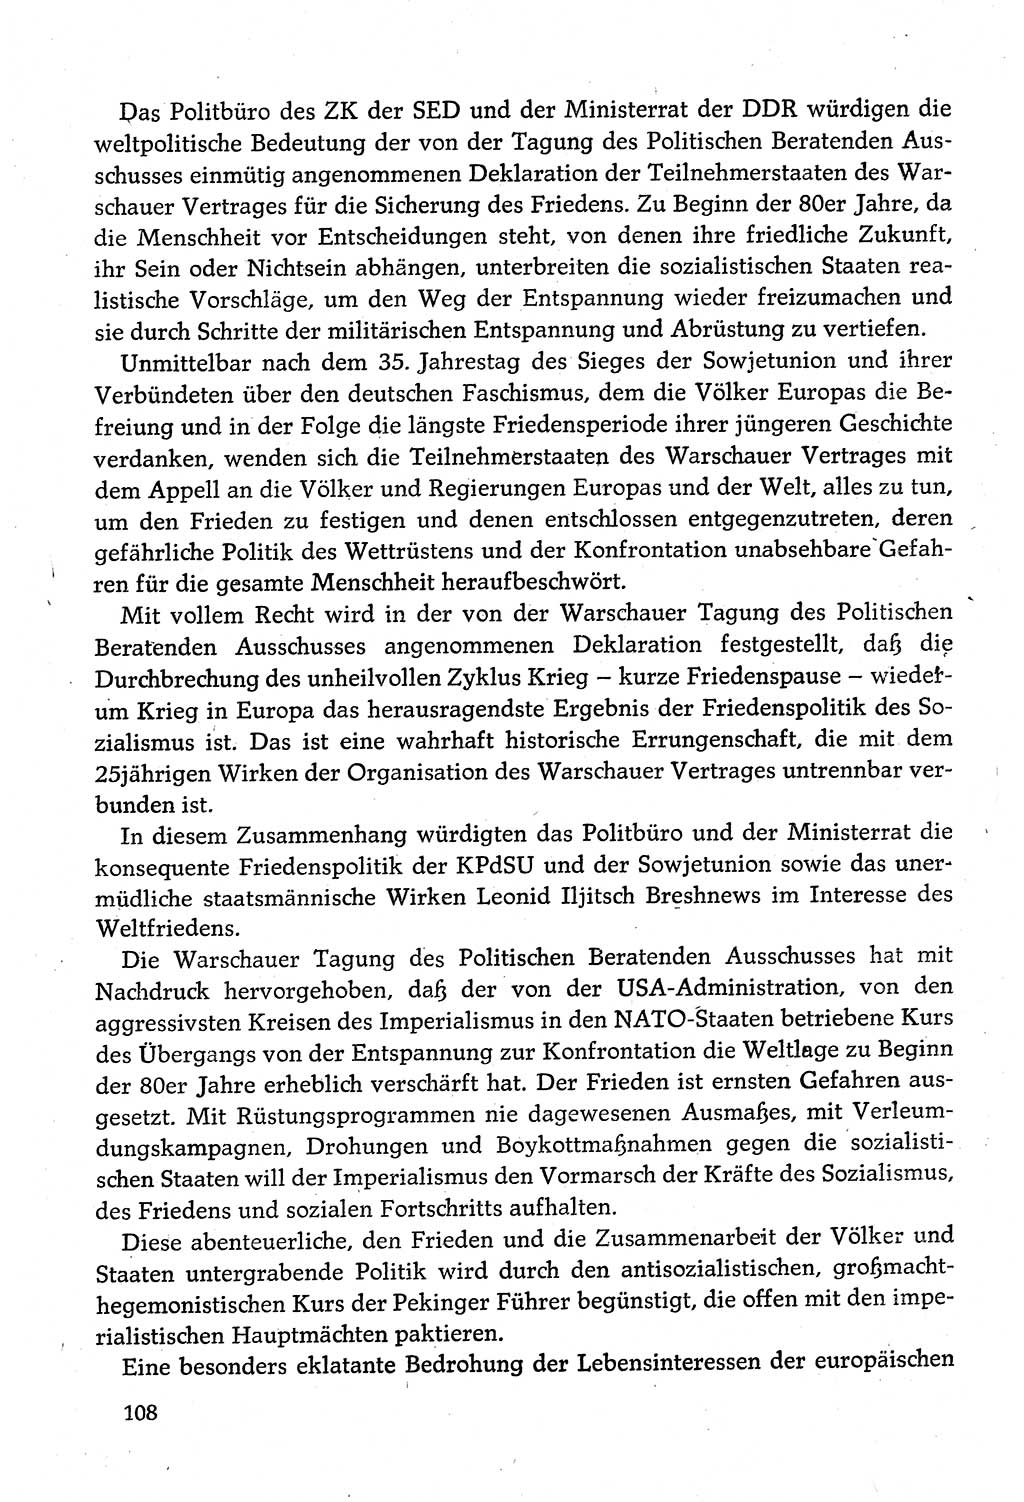 Dokumente der Sozialistischen Einheitspartei Deutschlands (SED) [Deutsche Demokratische Republik (DDR)] 1980-1981, Seite 108 (Dok. SED DDR 1980-1981, S. 108)